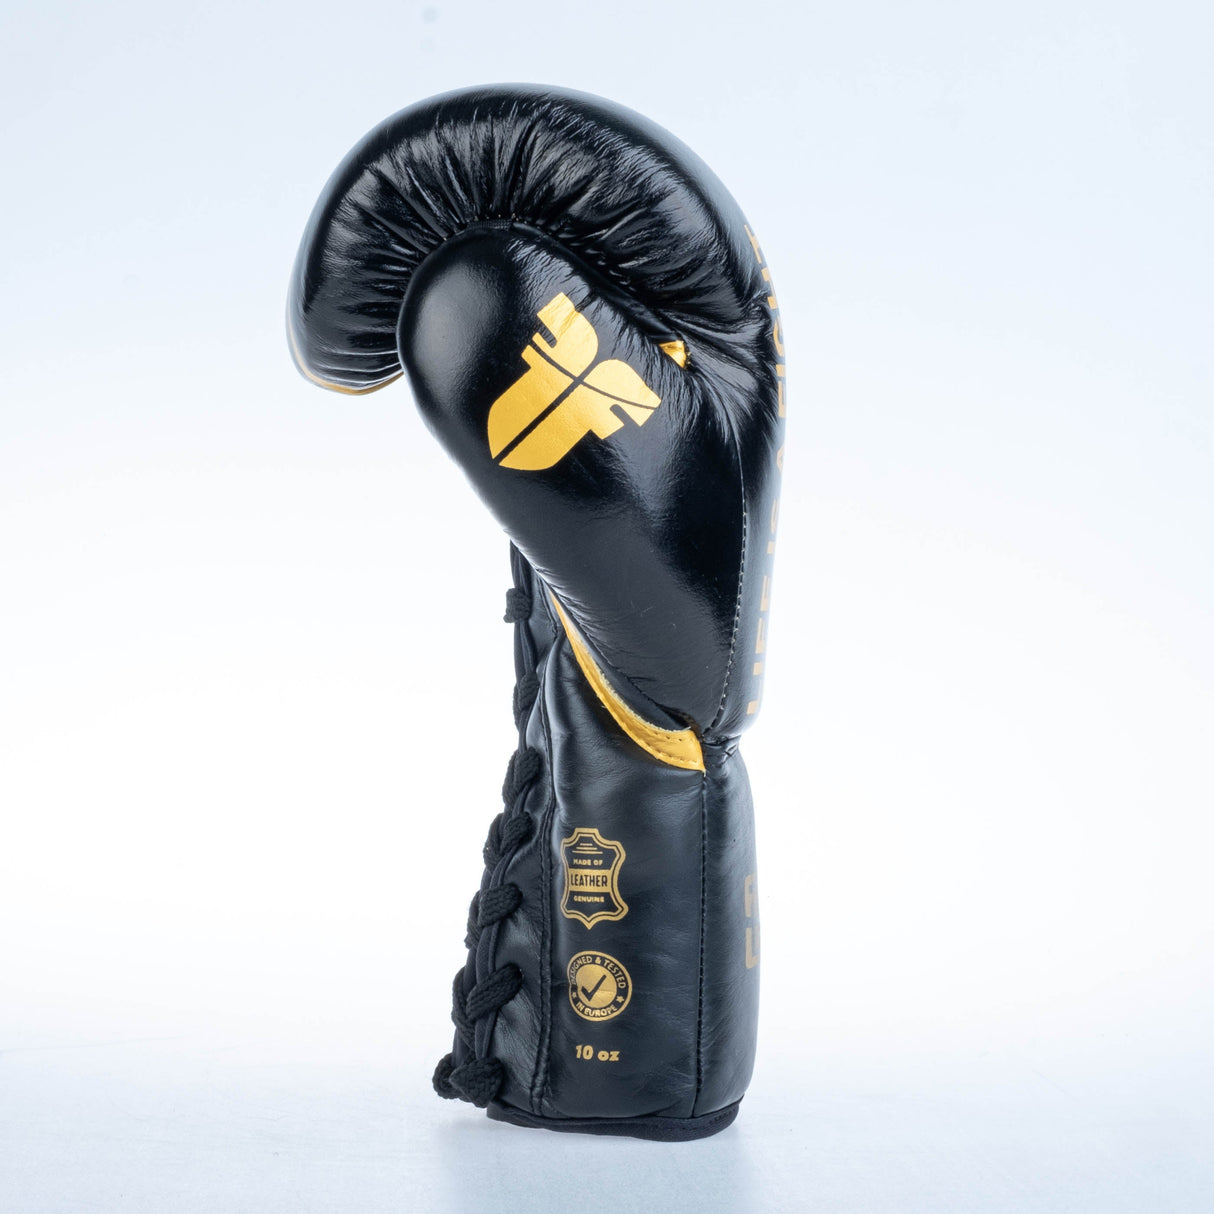 Gants de boxe Fighter Competition - noir/or, FBGF-002GL